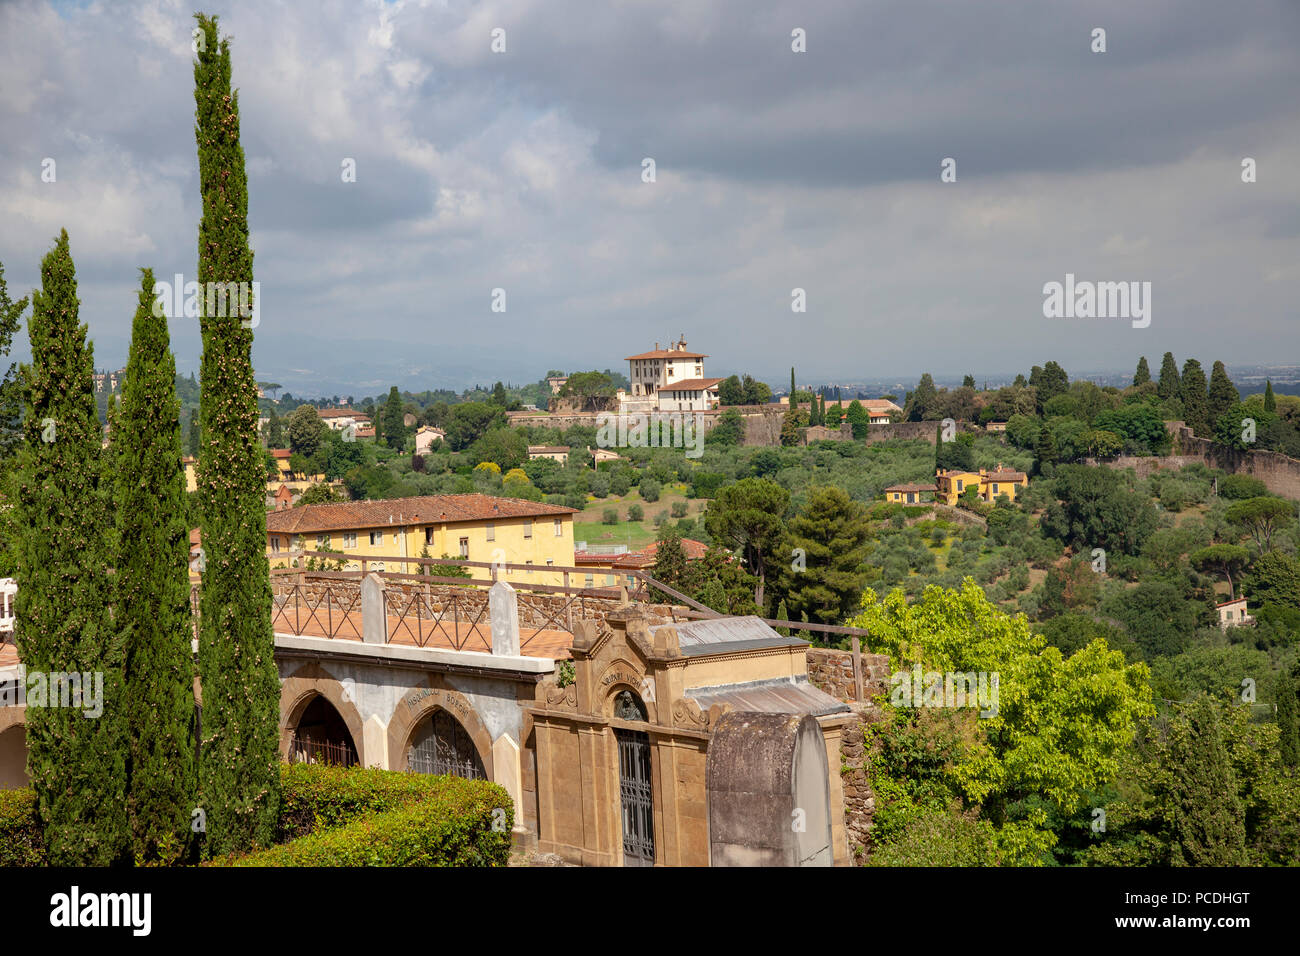 Le joli cimetière qui entoure l'église de San Miniato al Monte, à Florence (Toscane - Italie). Banque D'Images